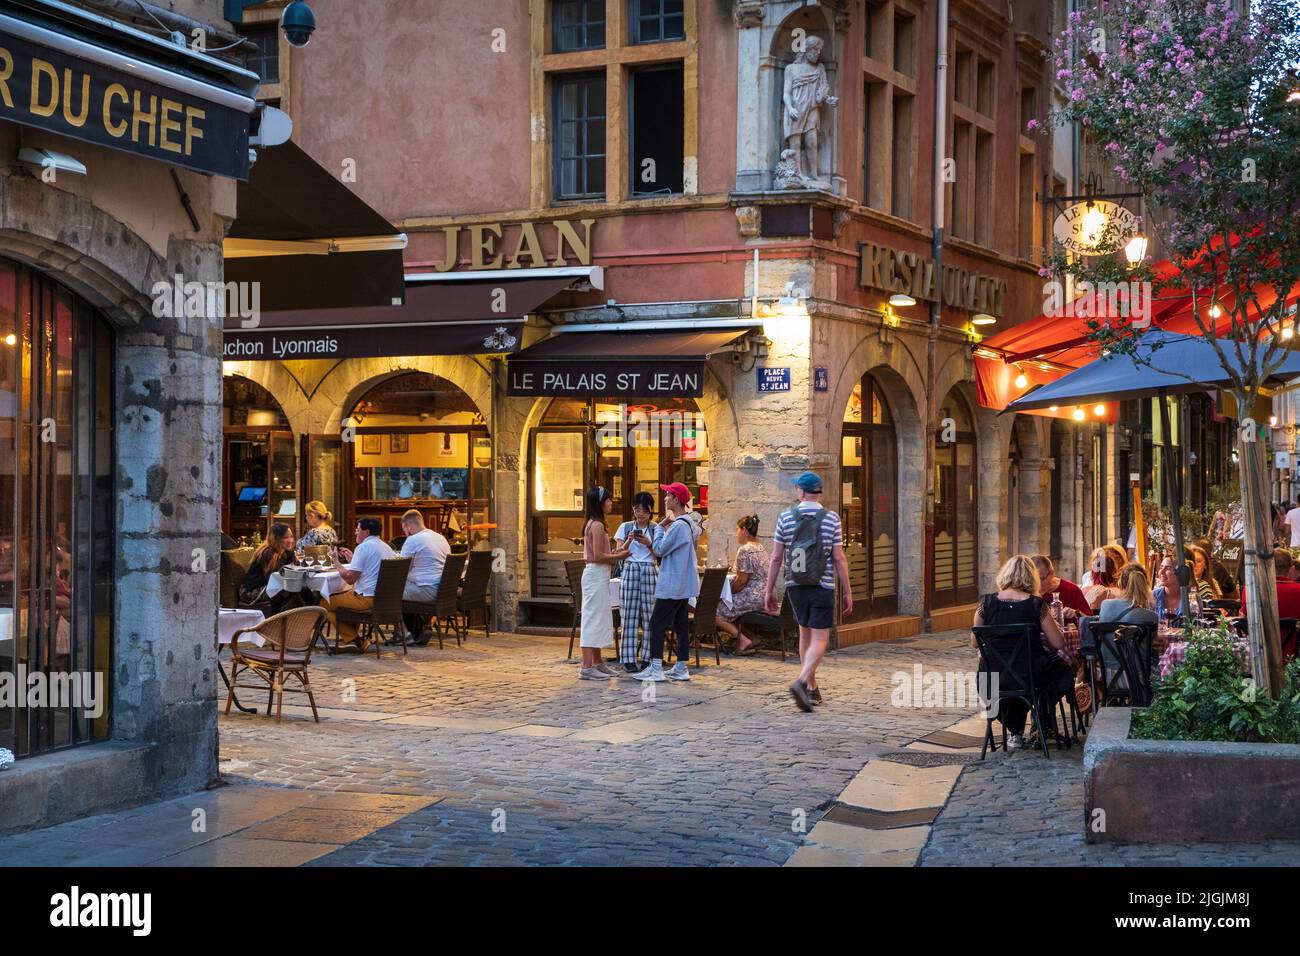 Ristoranti di strada al centro storico Vieux Lyon, patrimonio mondiale dell'UNESCO Lione, Rodano Alpi, Francia Foto Stock